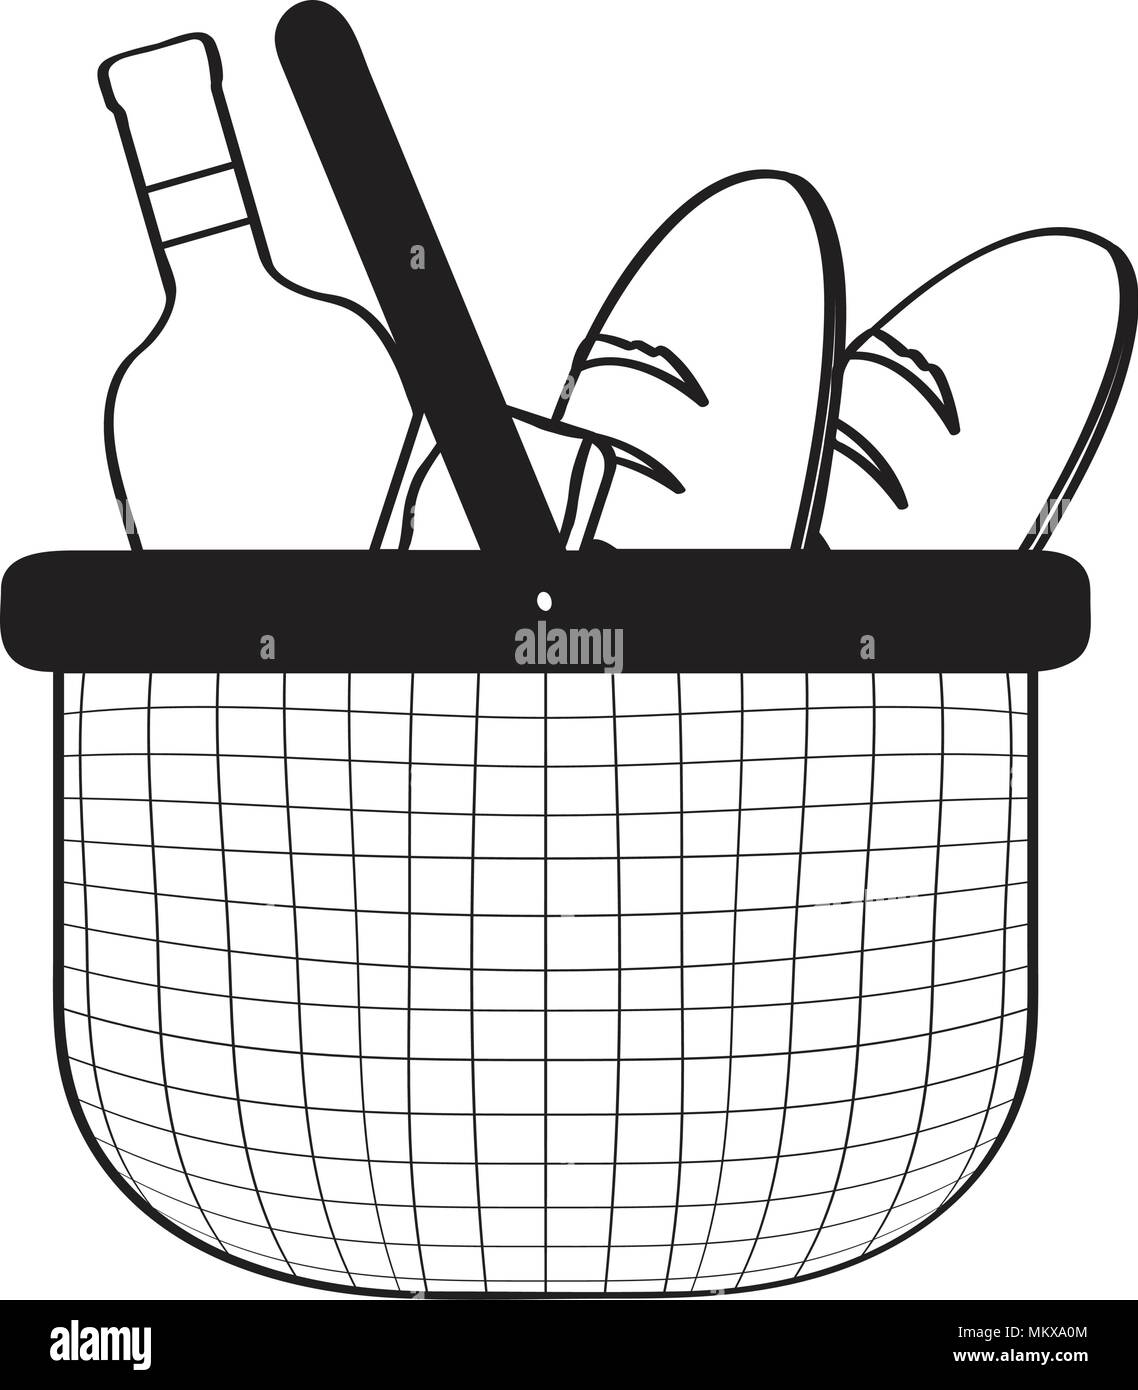 Picknickkorb Skizze Stock-Vektorgrafik - Alamy